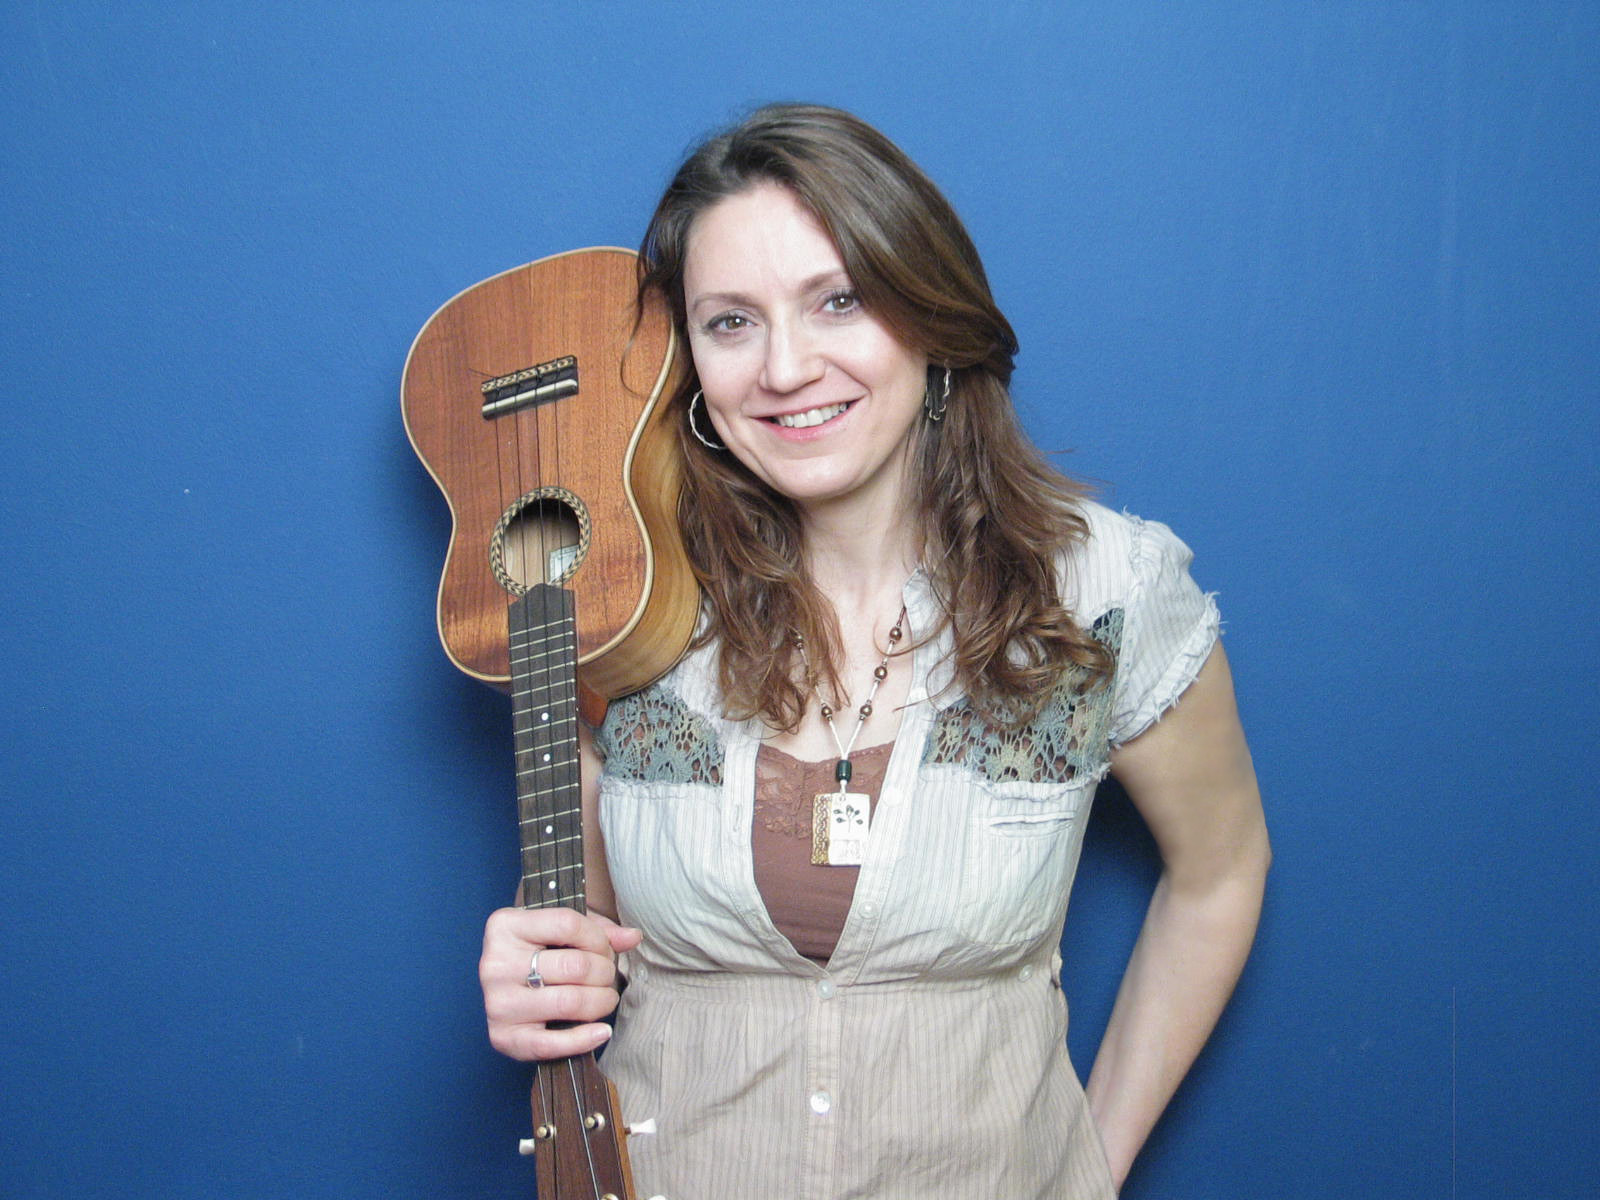 Suzanne holding a ukulele